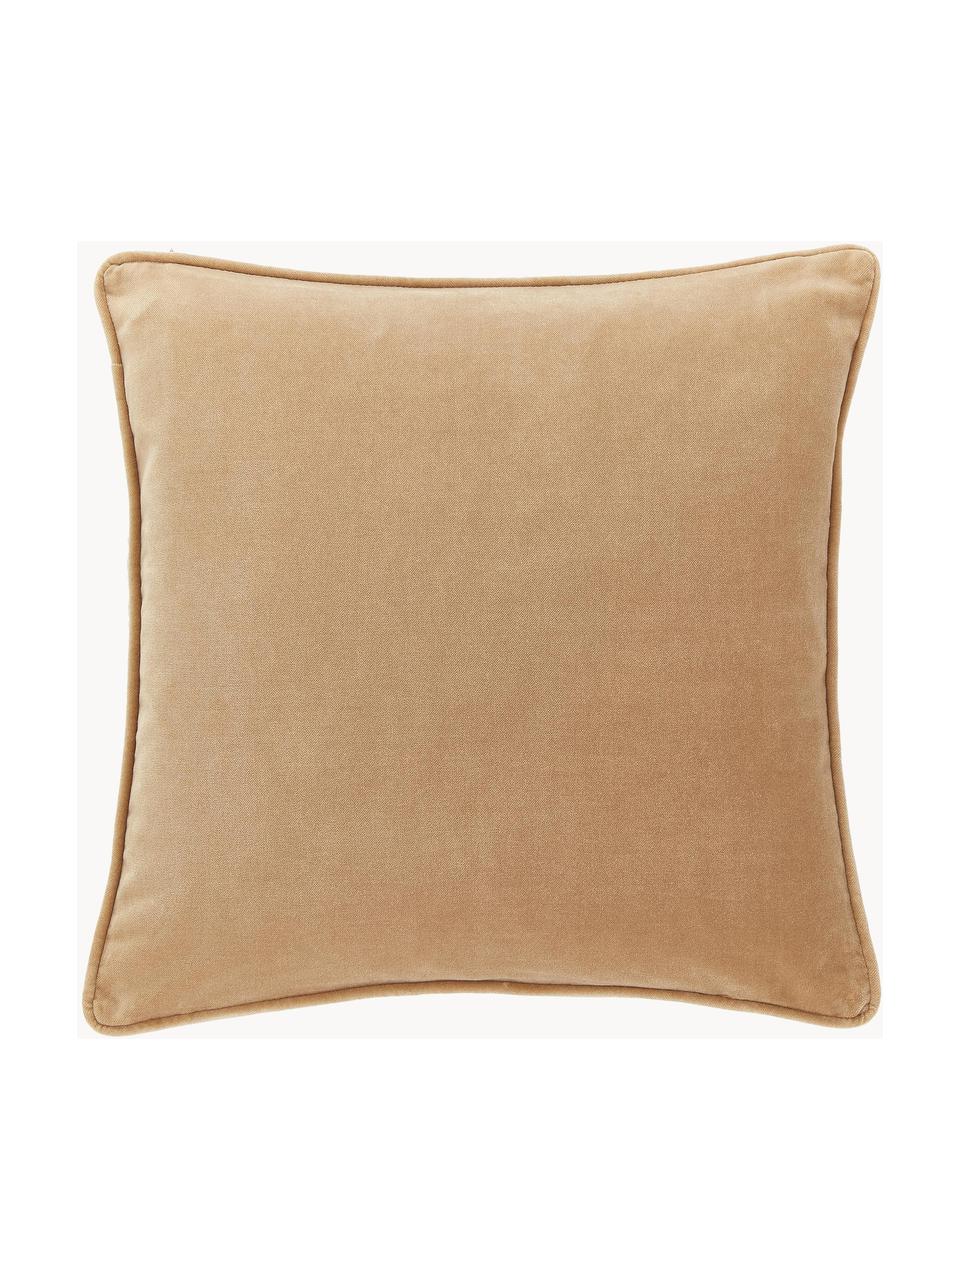 Poszewka na poduszkę z aksamitu Dana, 100% aksamit bawełniany, Jasny brązowy, S 50 x D 50 cm